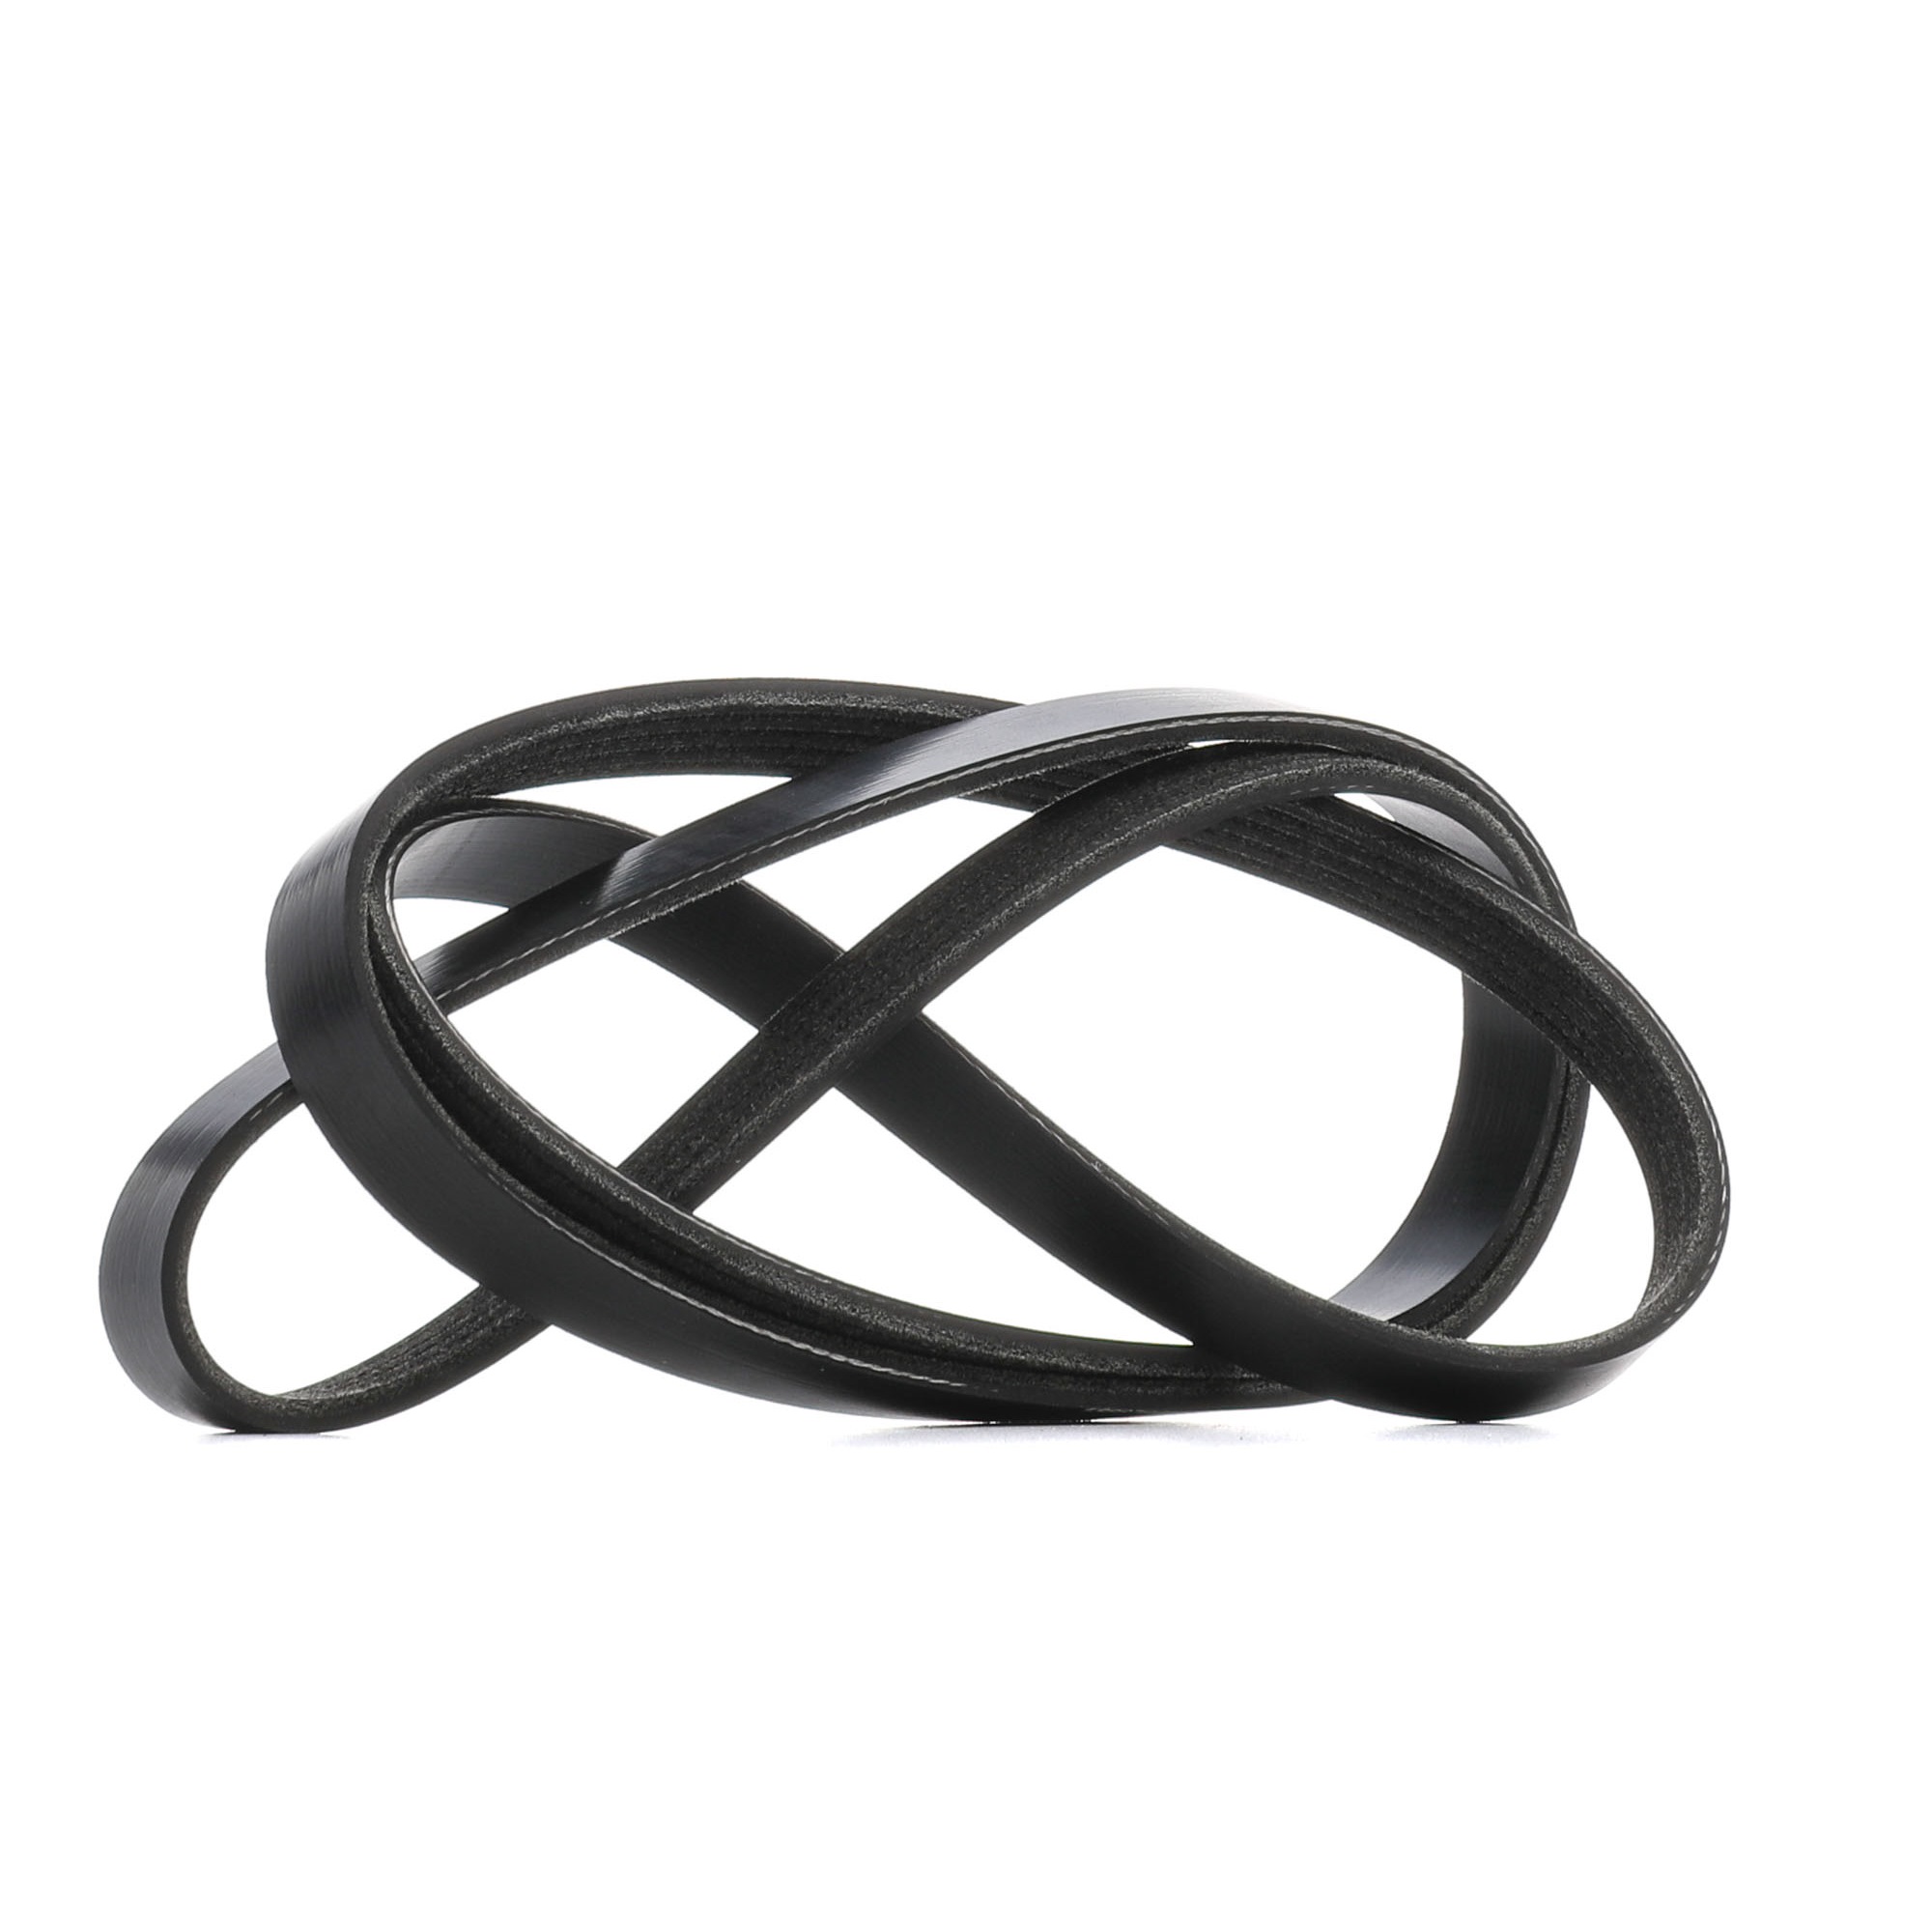 RIDEX 1790mm, 5, Polyester, EPDM (ethylene propylene diene Monomer (M-class) rubber) Number of ribs: 5, Length: 1790mm Alternator belt 305P0582 buy